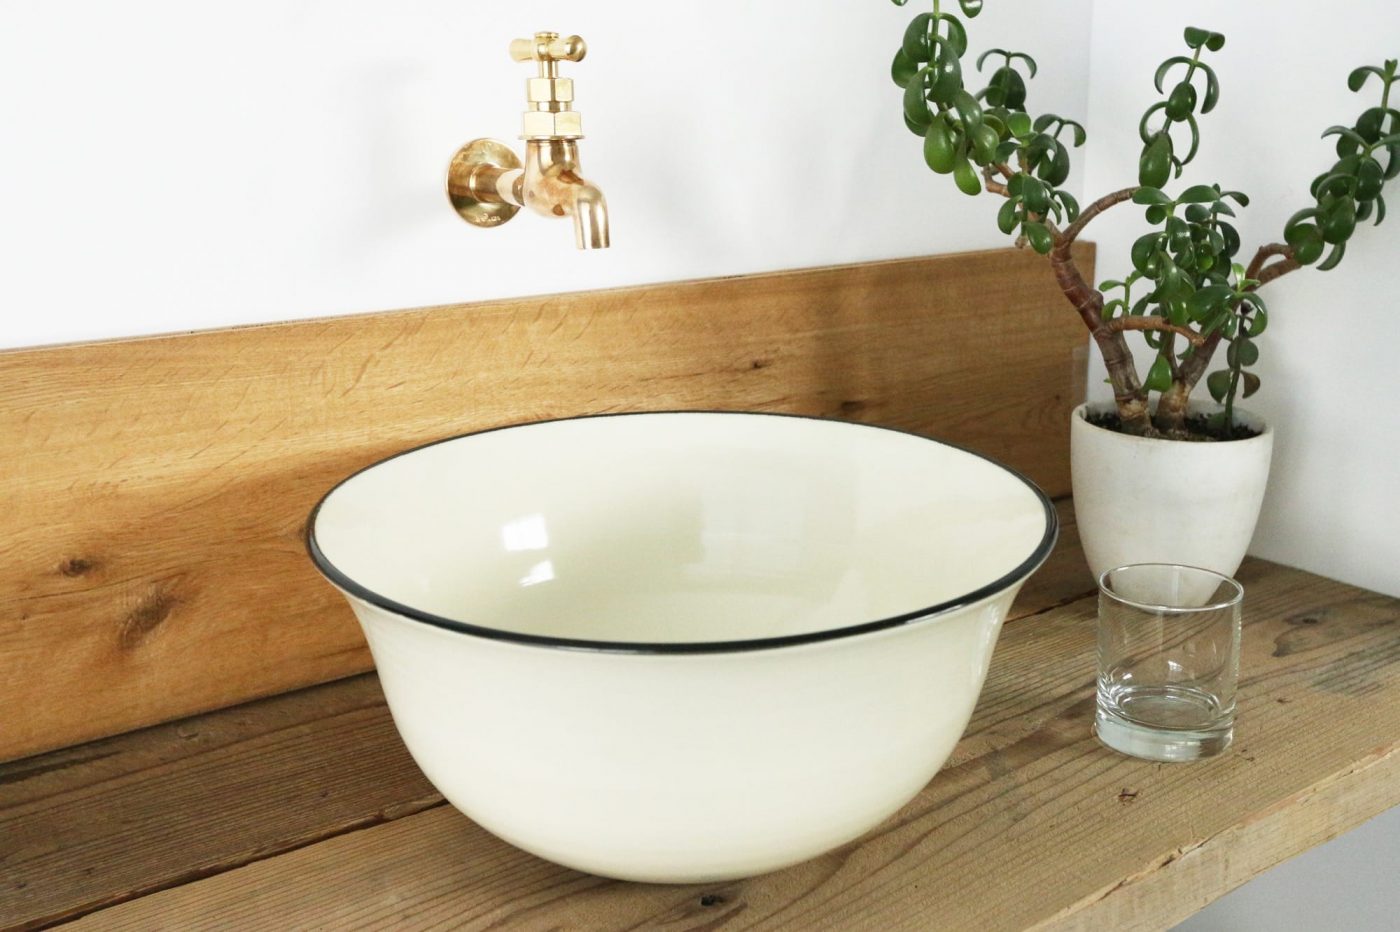 鉢植えやガラスのコップとの相性も良く、洗面やトイレが落ち着く空間に。
